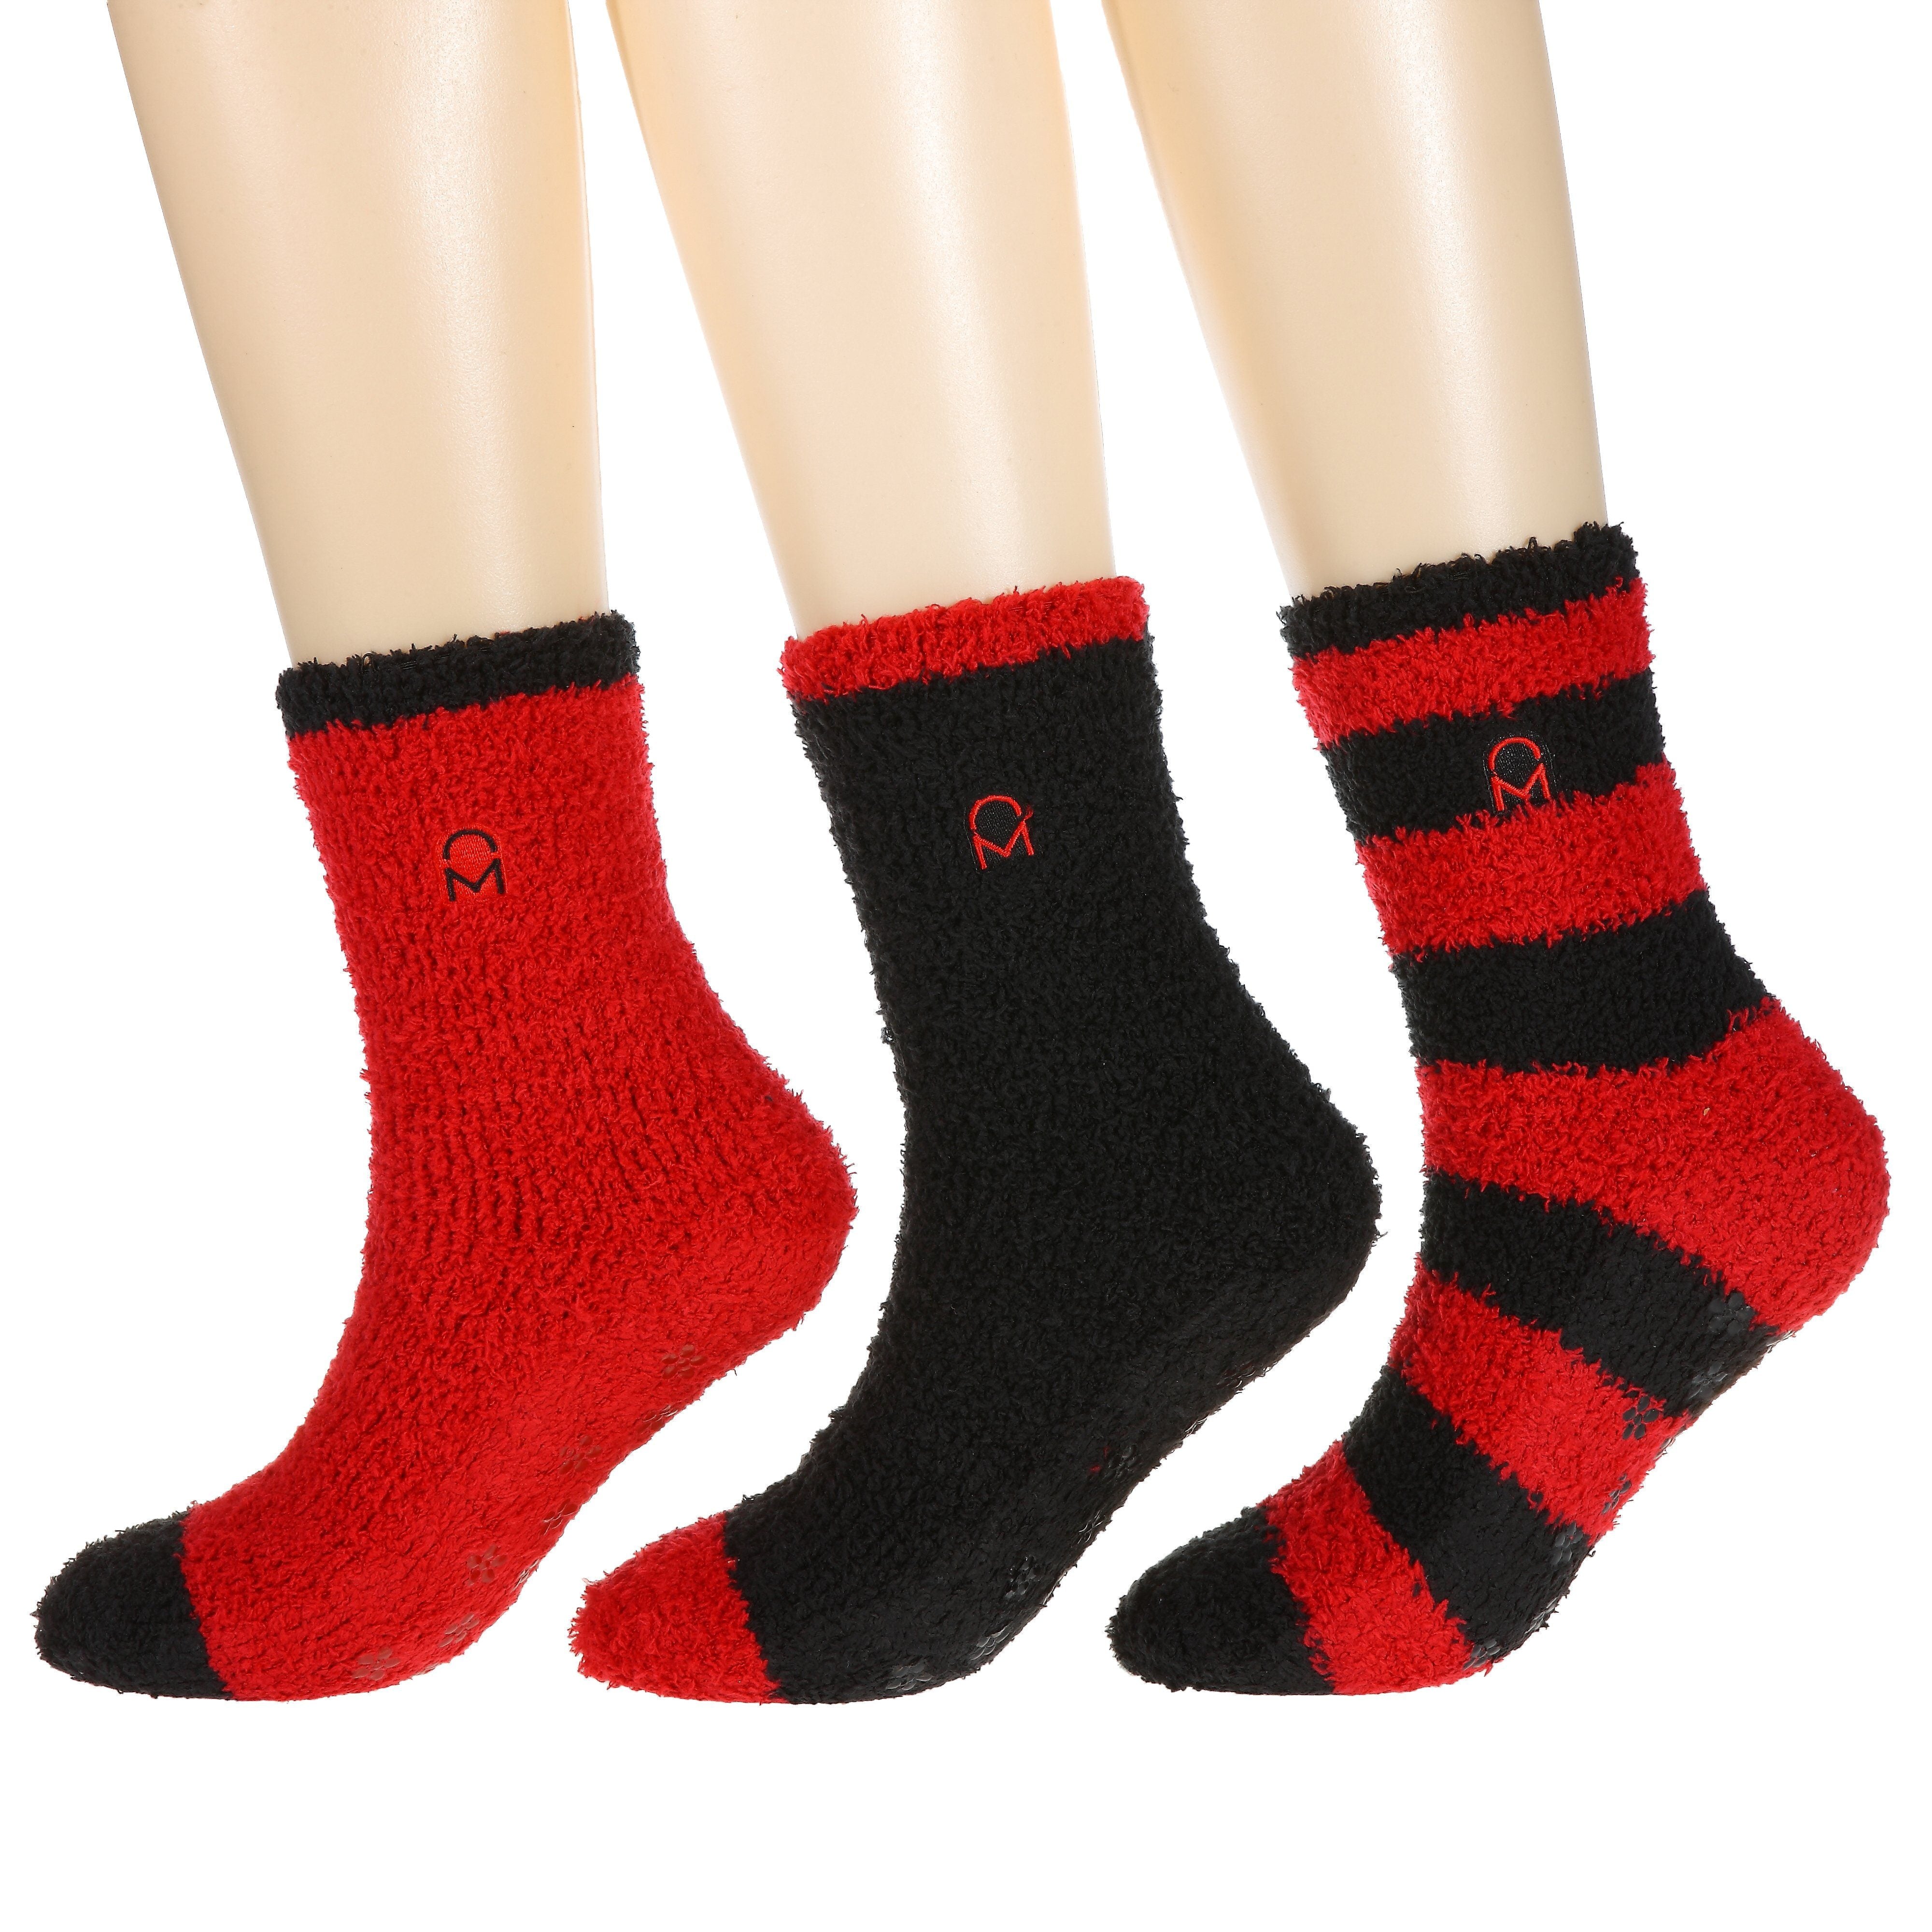 Women's (3 Pairs) Soft Anti-Skid Fuzzy Winter Crew Socks